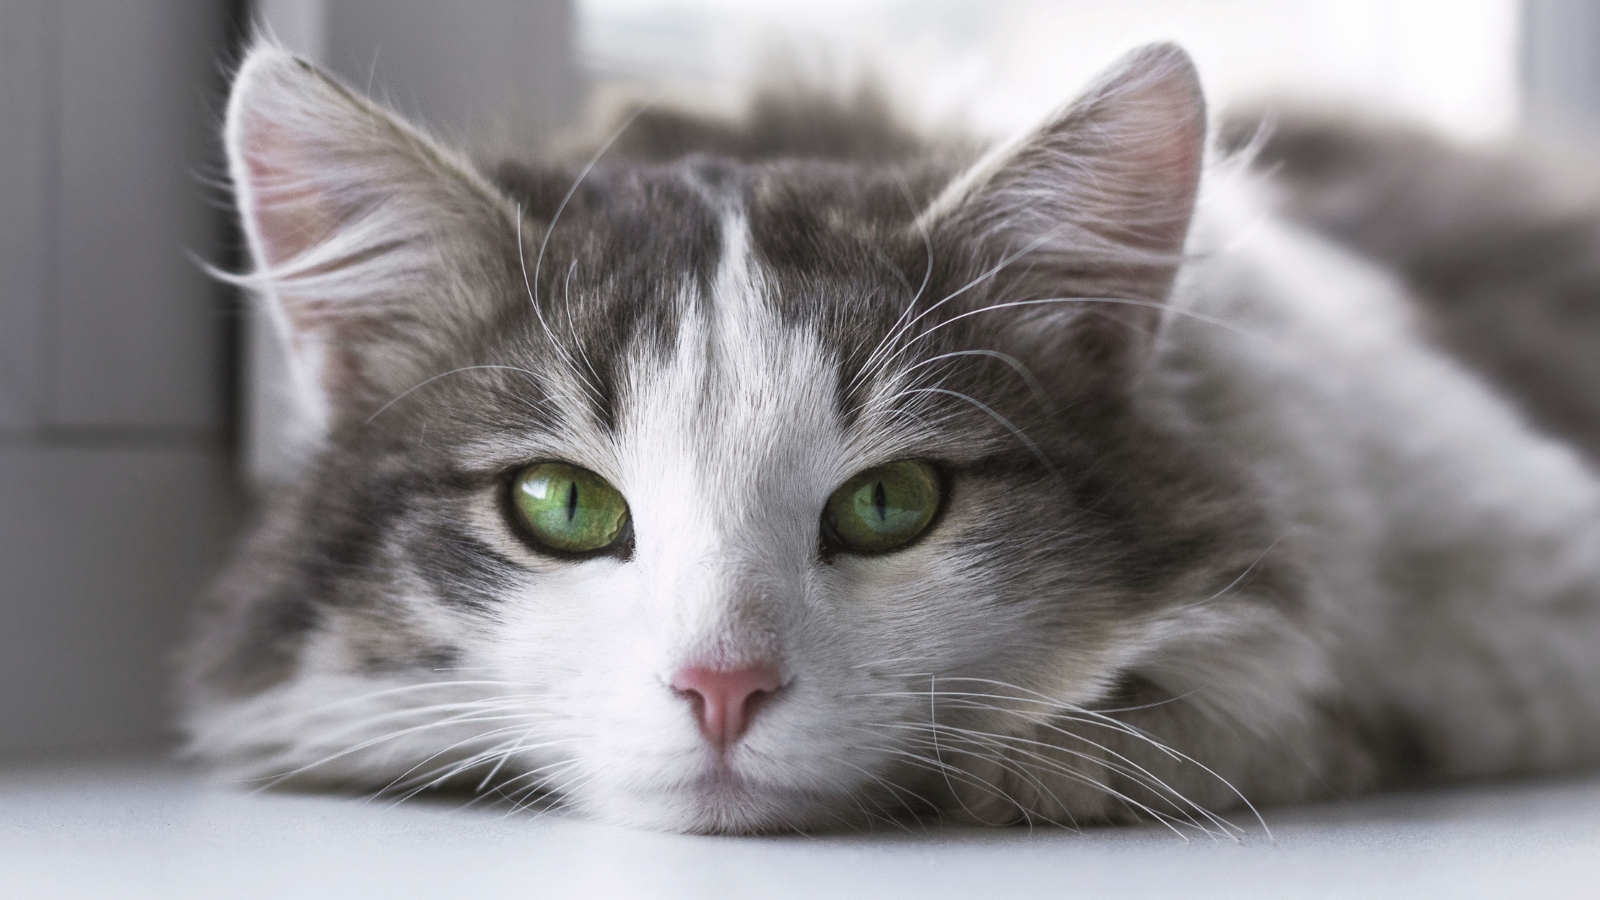 Puszysty kot z zielonymi oczami leży na podłodze.